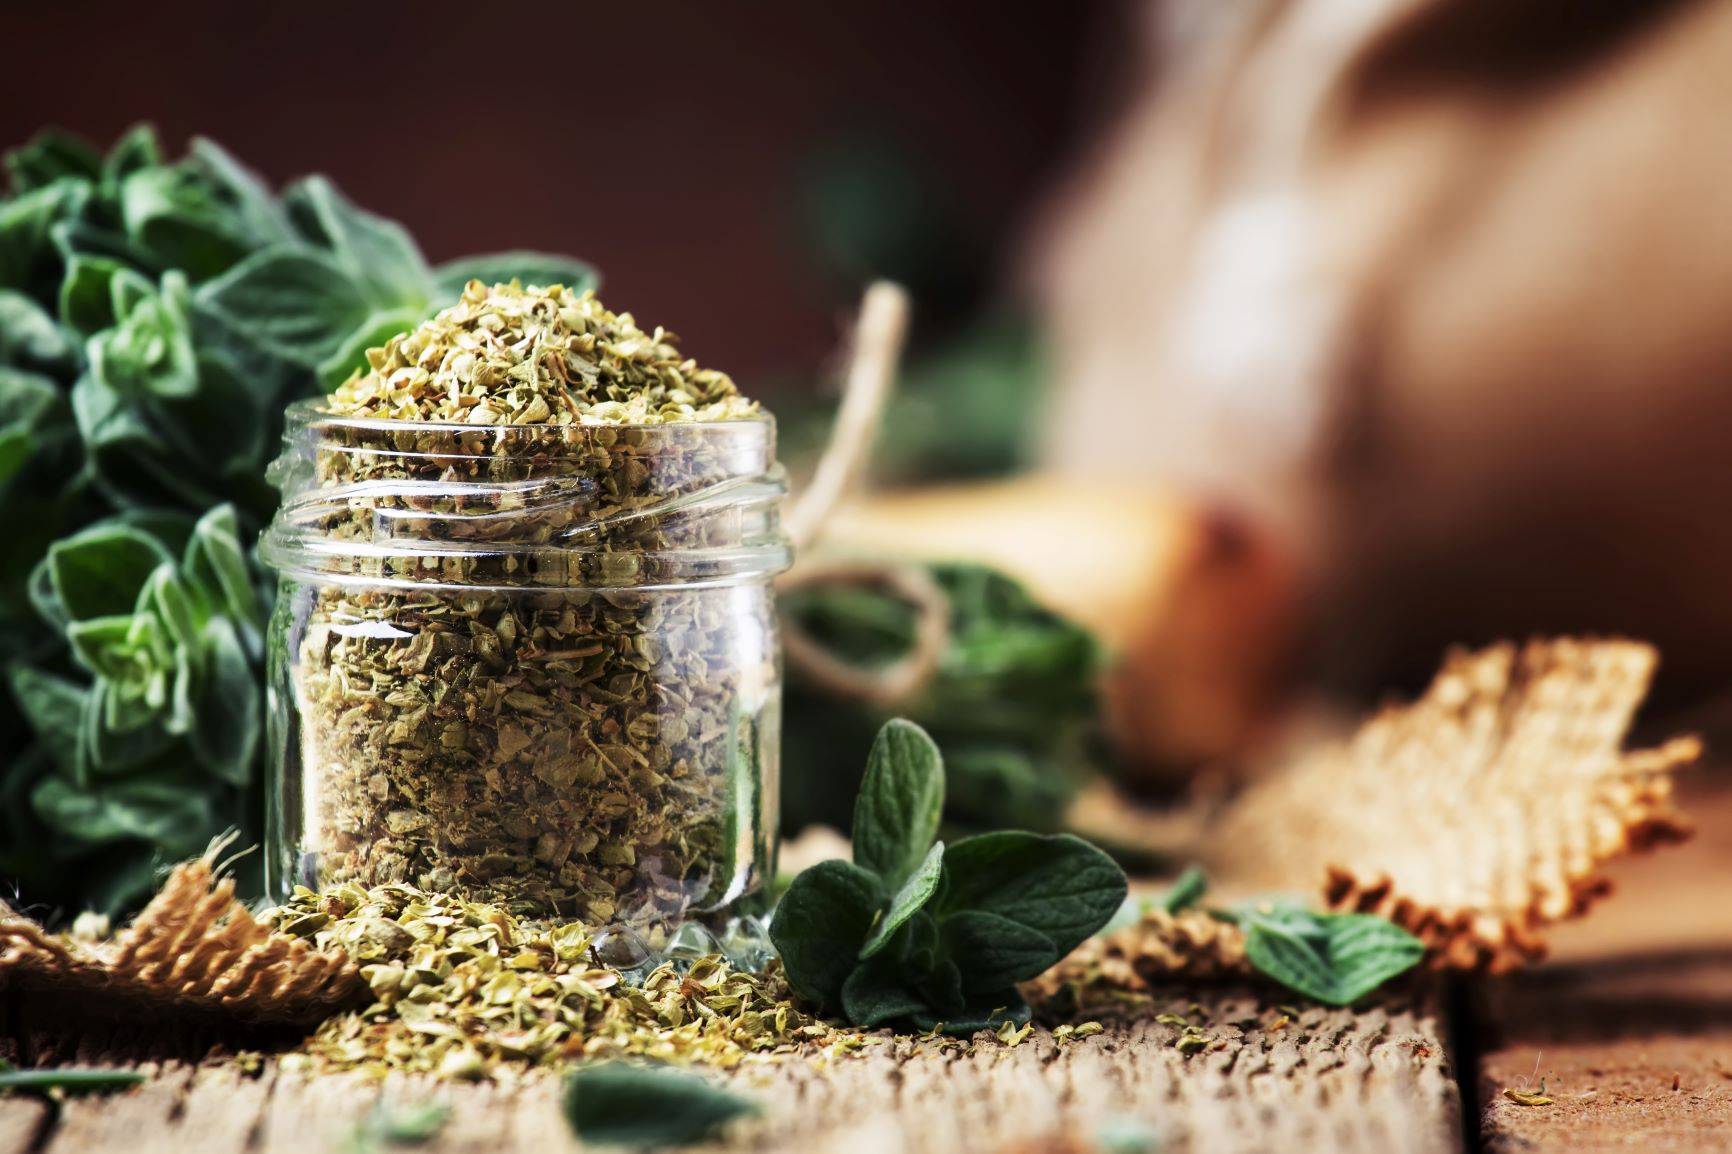 Herbatka z oregano pomaga zwalczać wirusy, bakterie i pasożyty. Suszone oregano w słoiczku na drewnianym stole, obok leżą listki lebiodki.